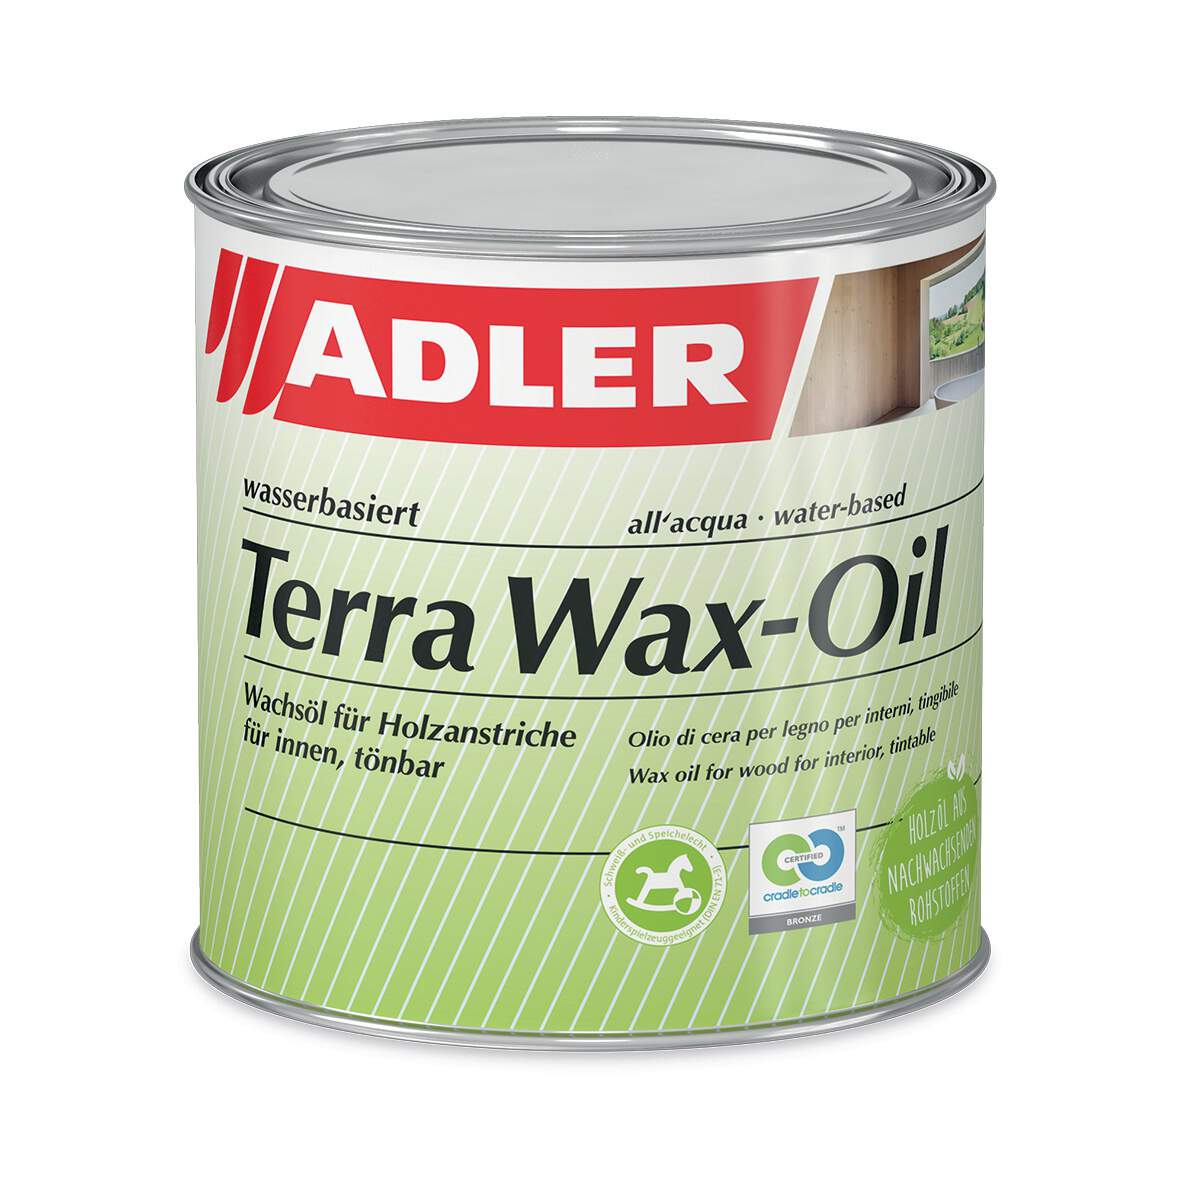 1275250 - Terra Wax-Oil farblos tönbar